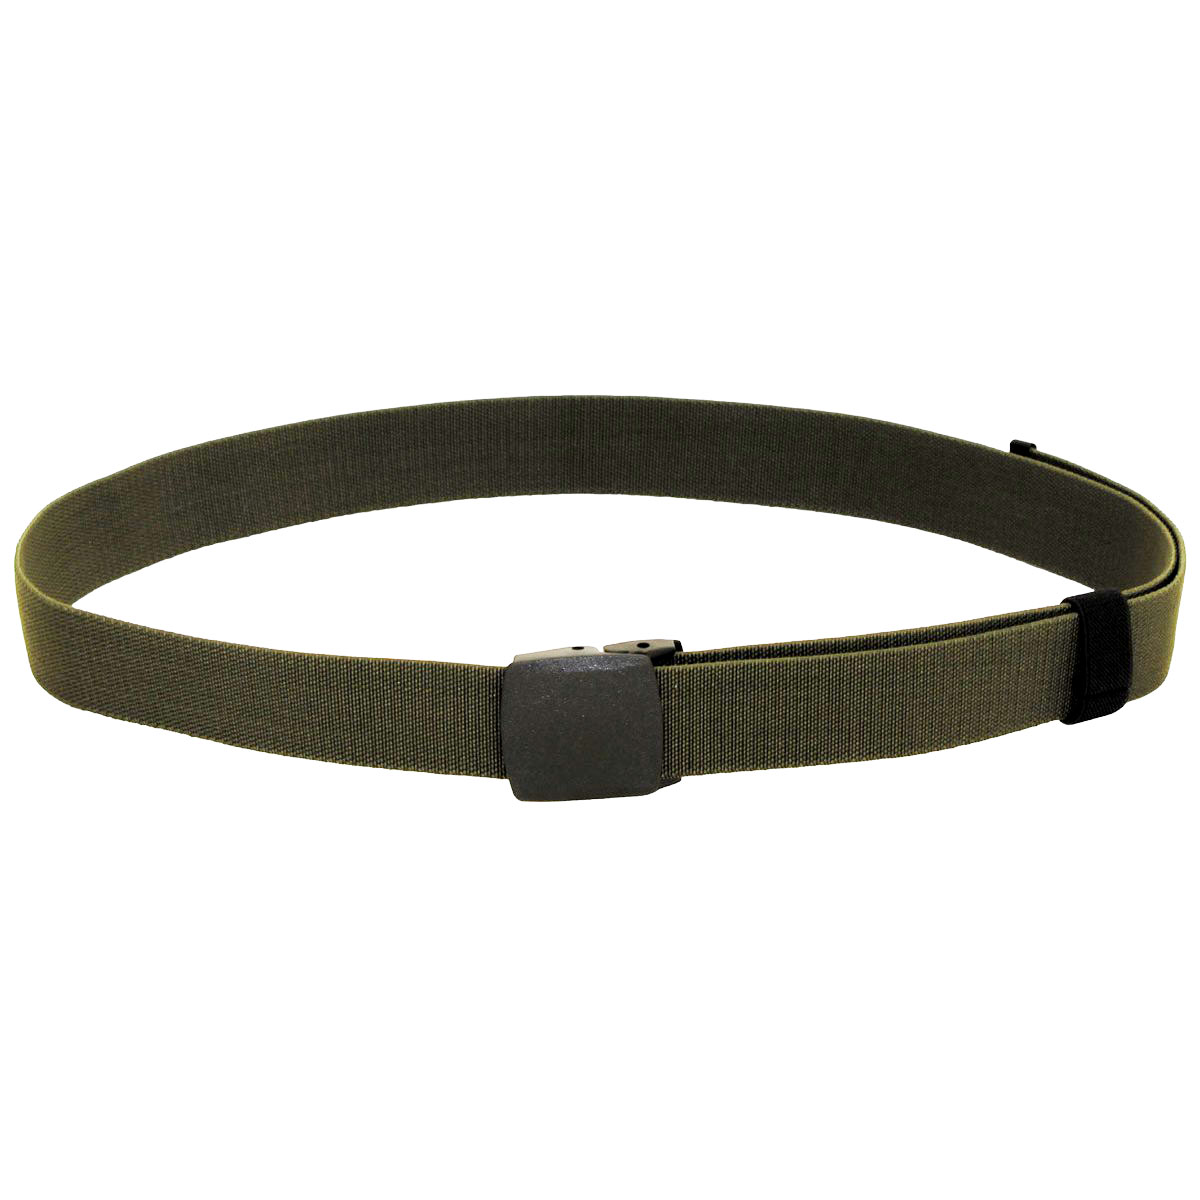 Tactical elastic belt in 3 colors